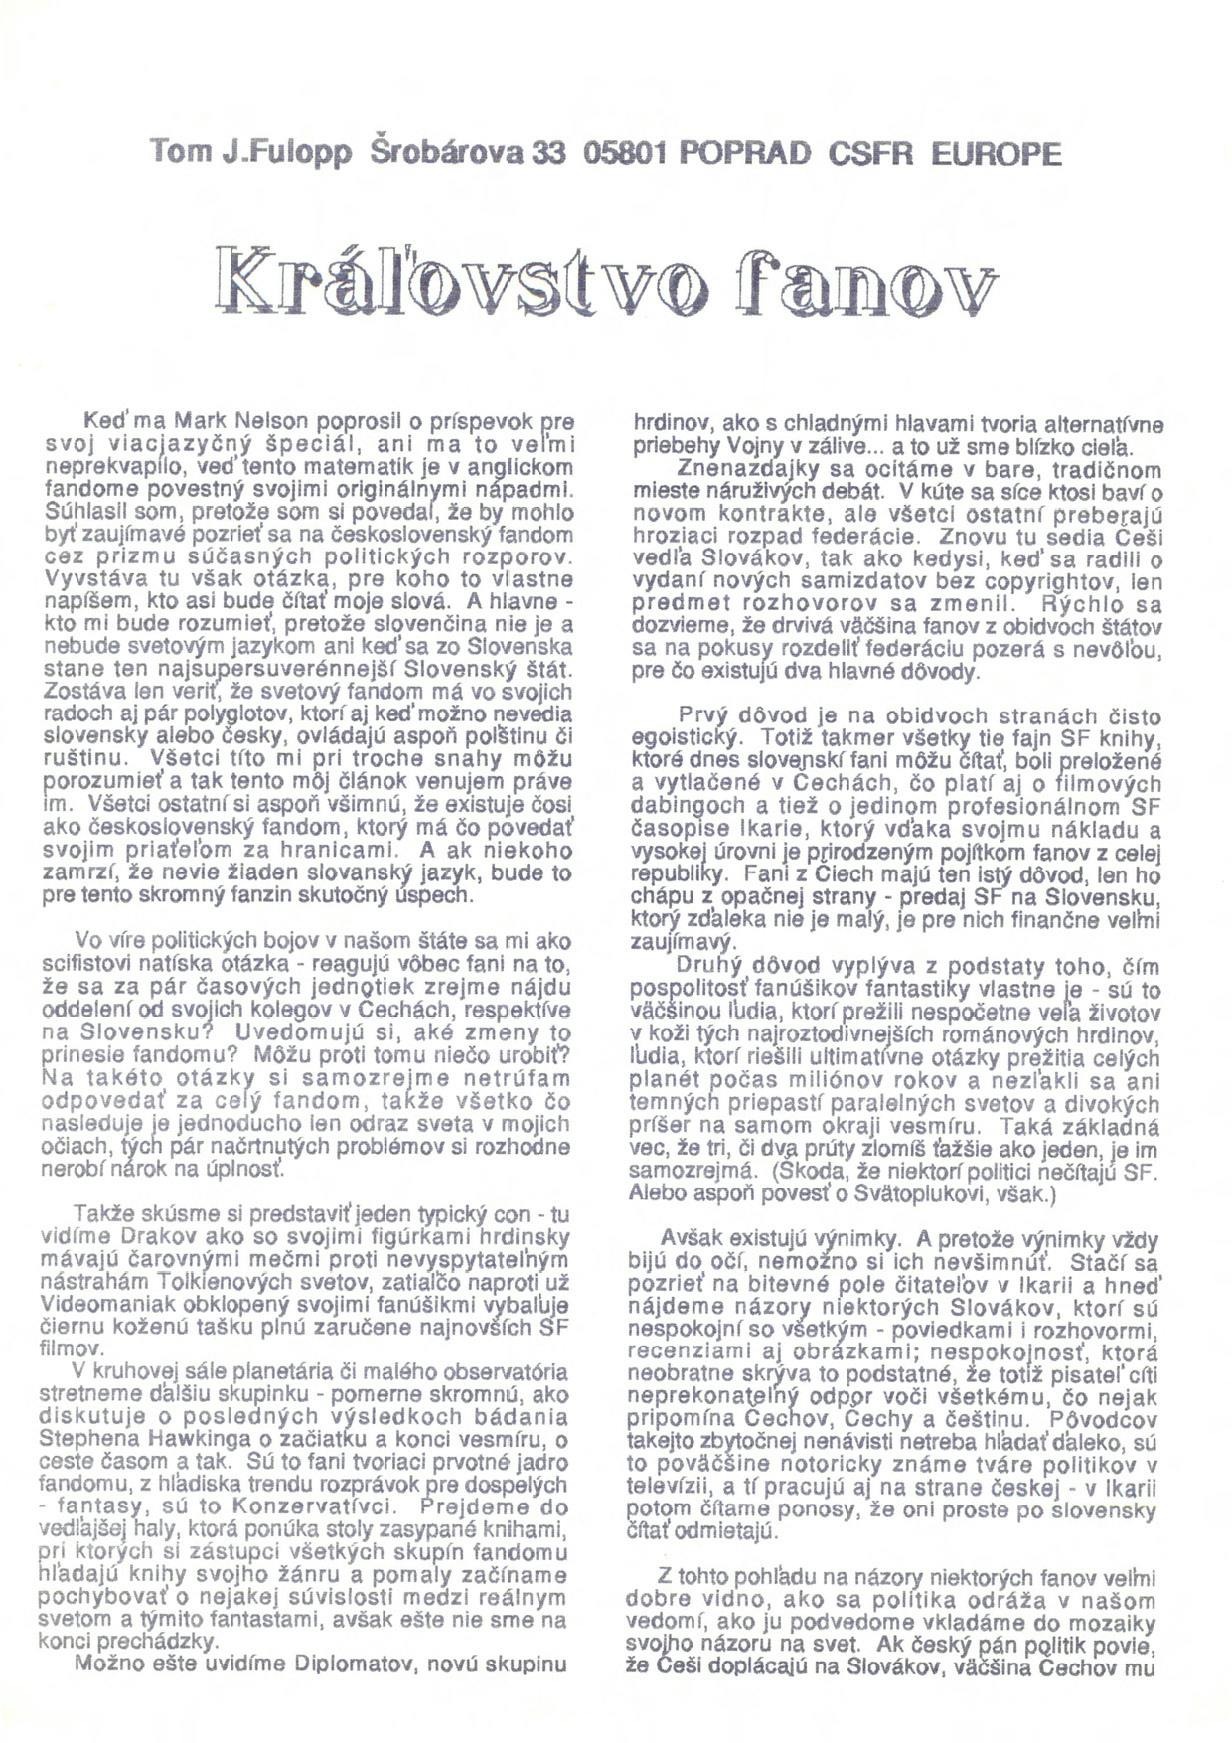 Sken prvej strany vytlačeného článku (Tomáš Fülöpp)